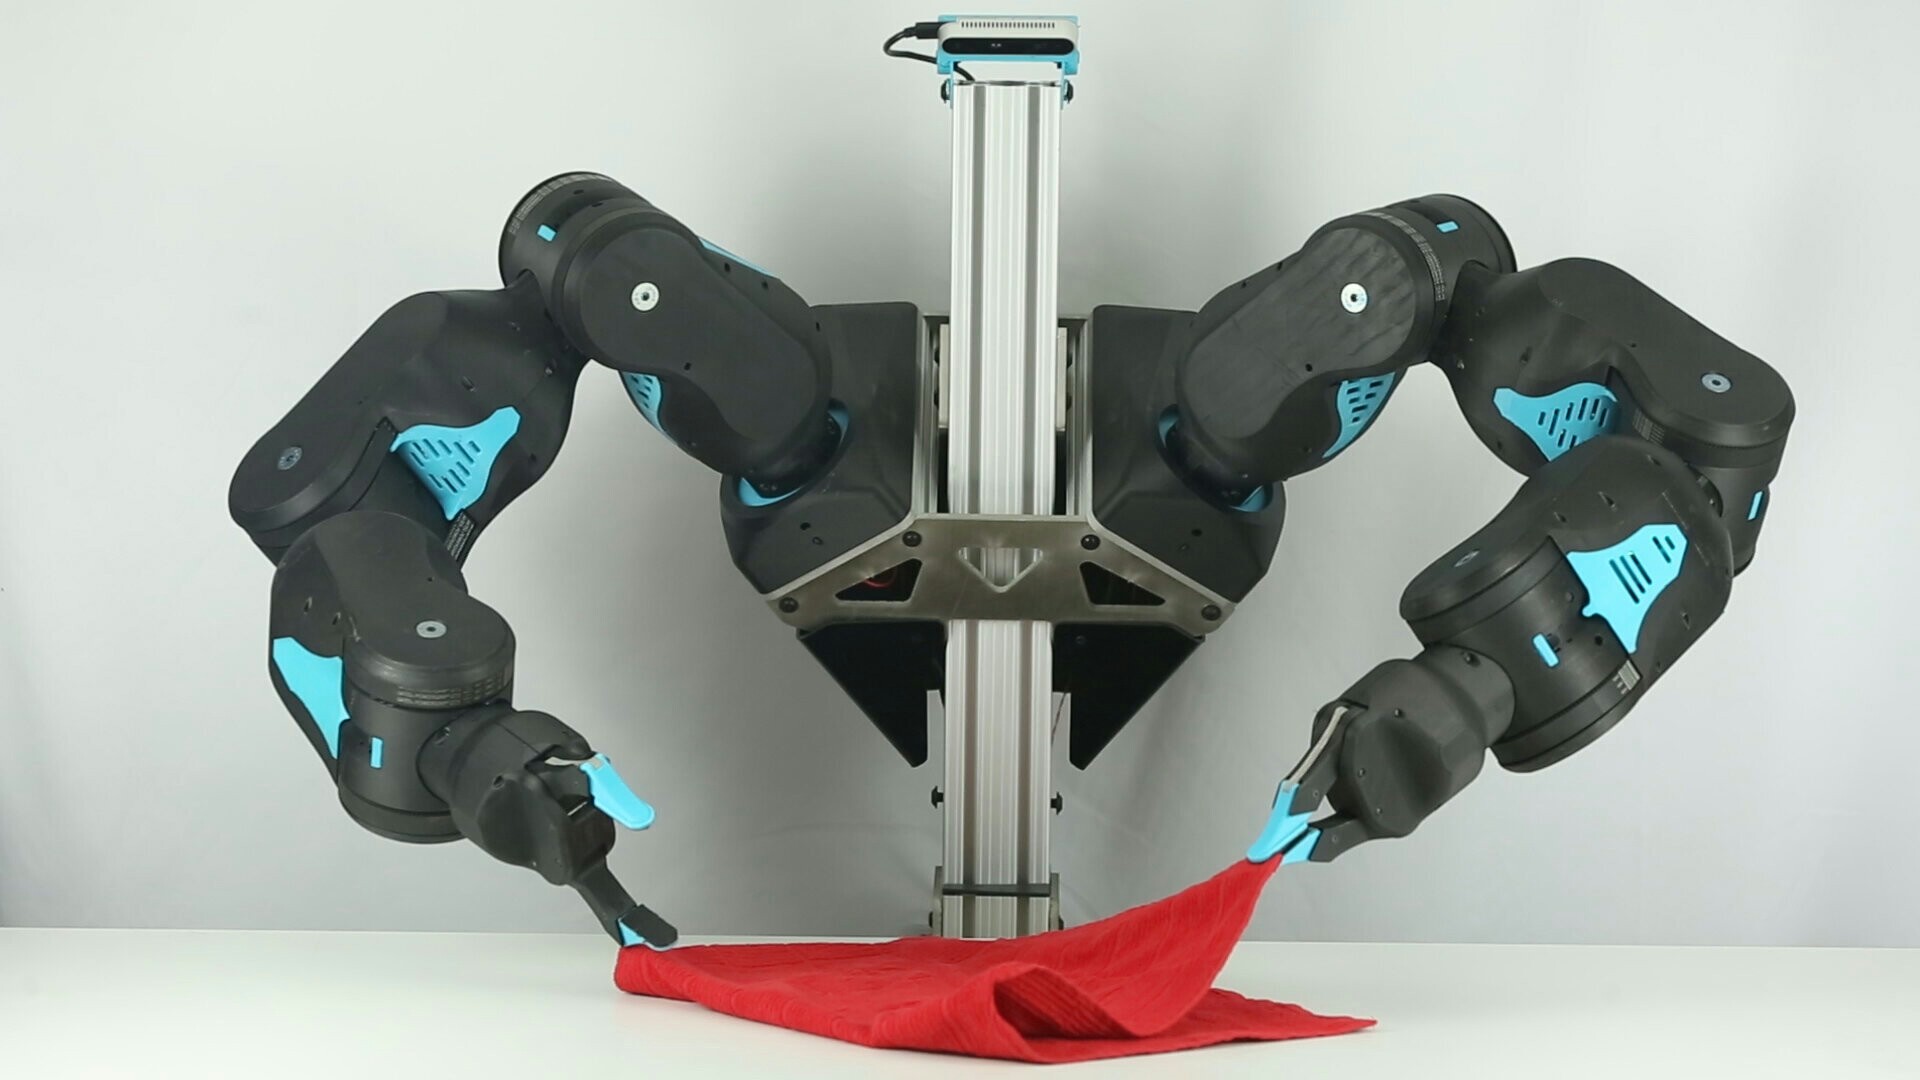 ربات ارزان قیمتی به نام آبی با هوش مصنوعی ساخته شد